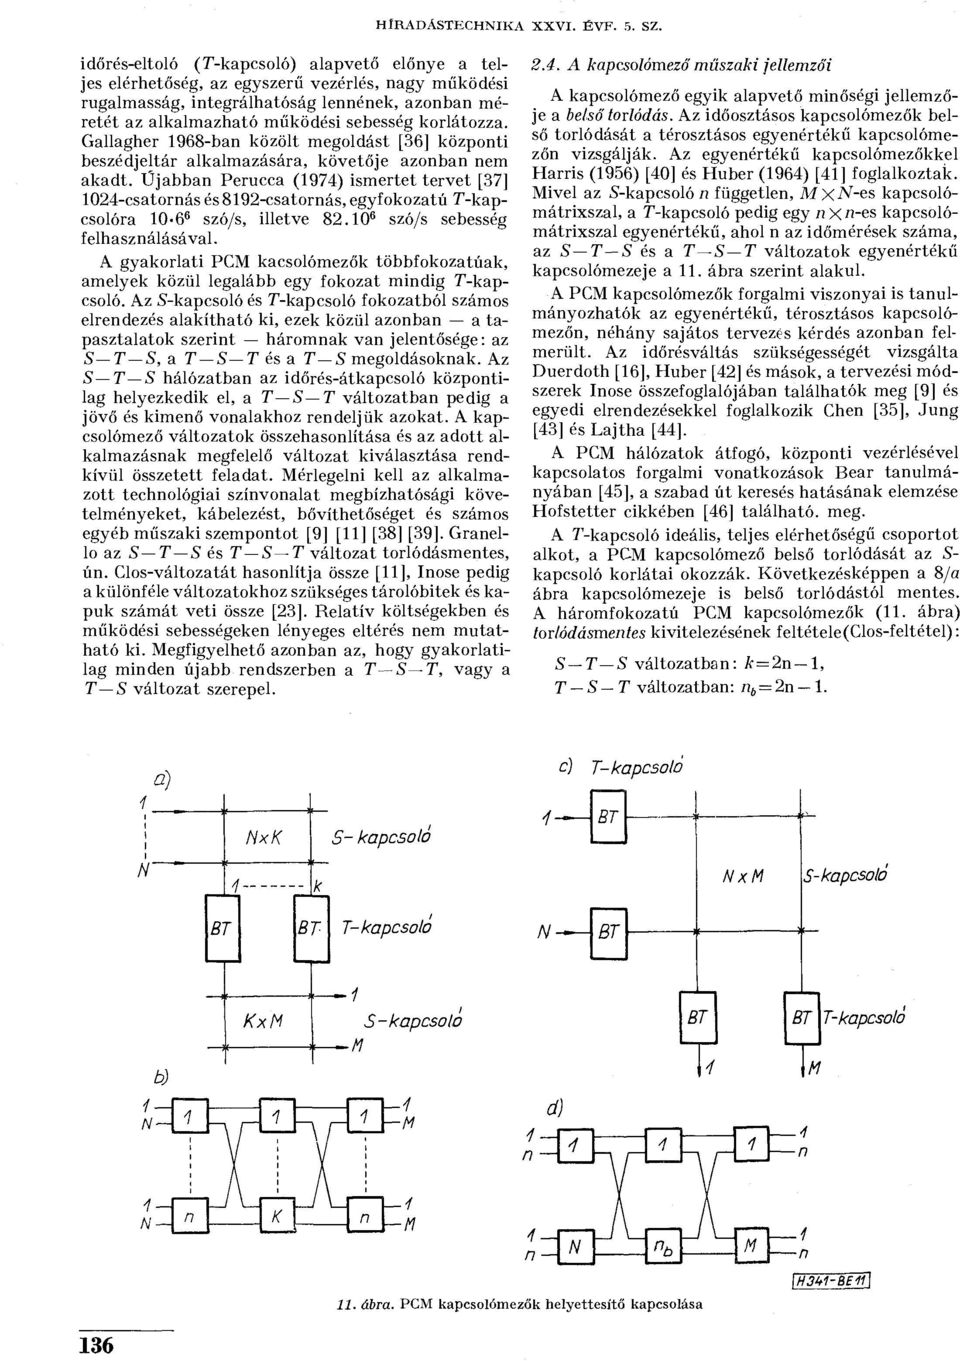 Újabban Perucca (1974) ismertet tervet [37] 1024-csatornás és 8192-csatornás, egyfokozatú T-kapcsolóra 10-6 6 szó/s, illetve 82.10 6 szó/s sebesség felhasználásával.